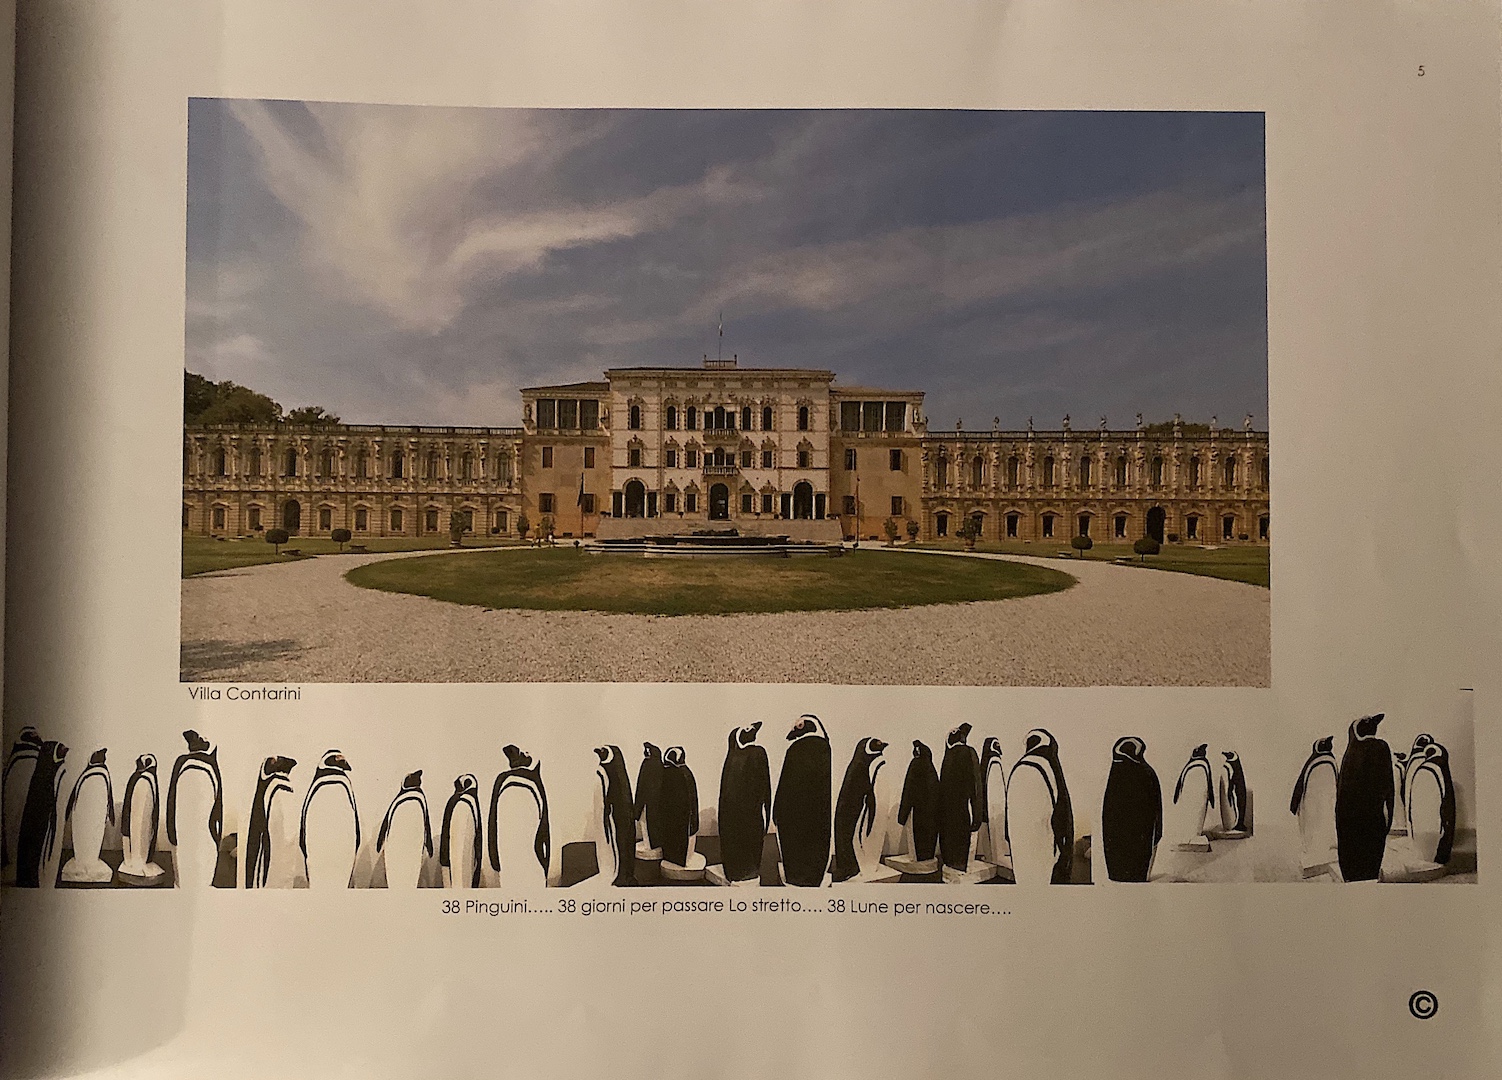 Il documento che certifica un progetto in fase di realizzazione a Vicenza, dove verranno posizionate delle statue di pinguino scolpite dall'artista Michelazzo Margherita